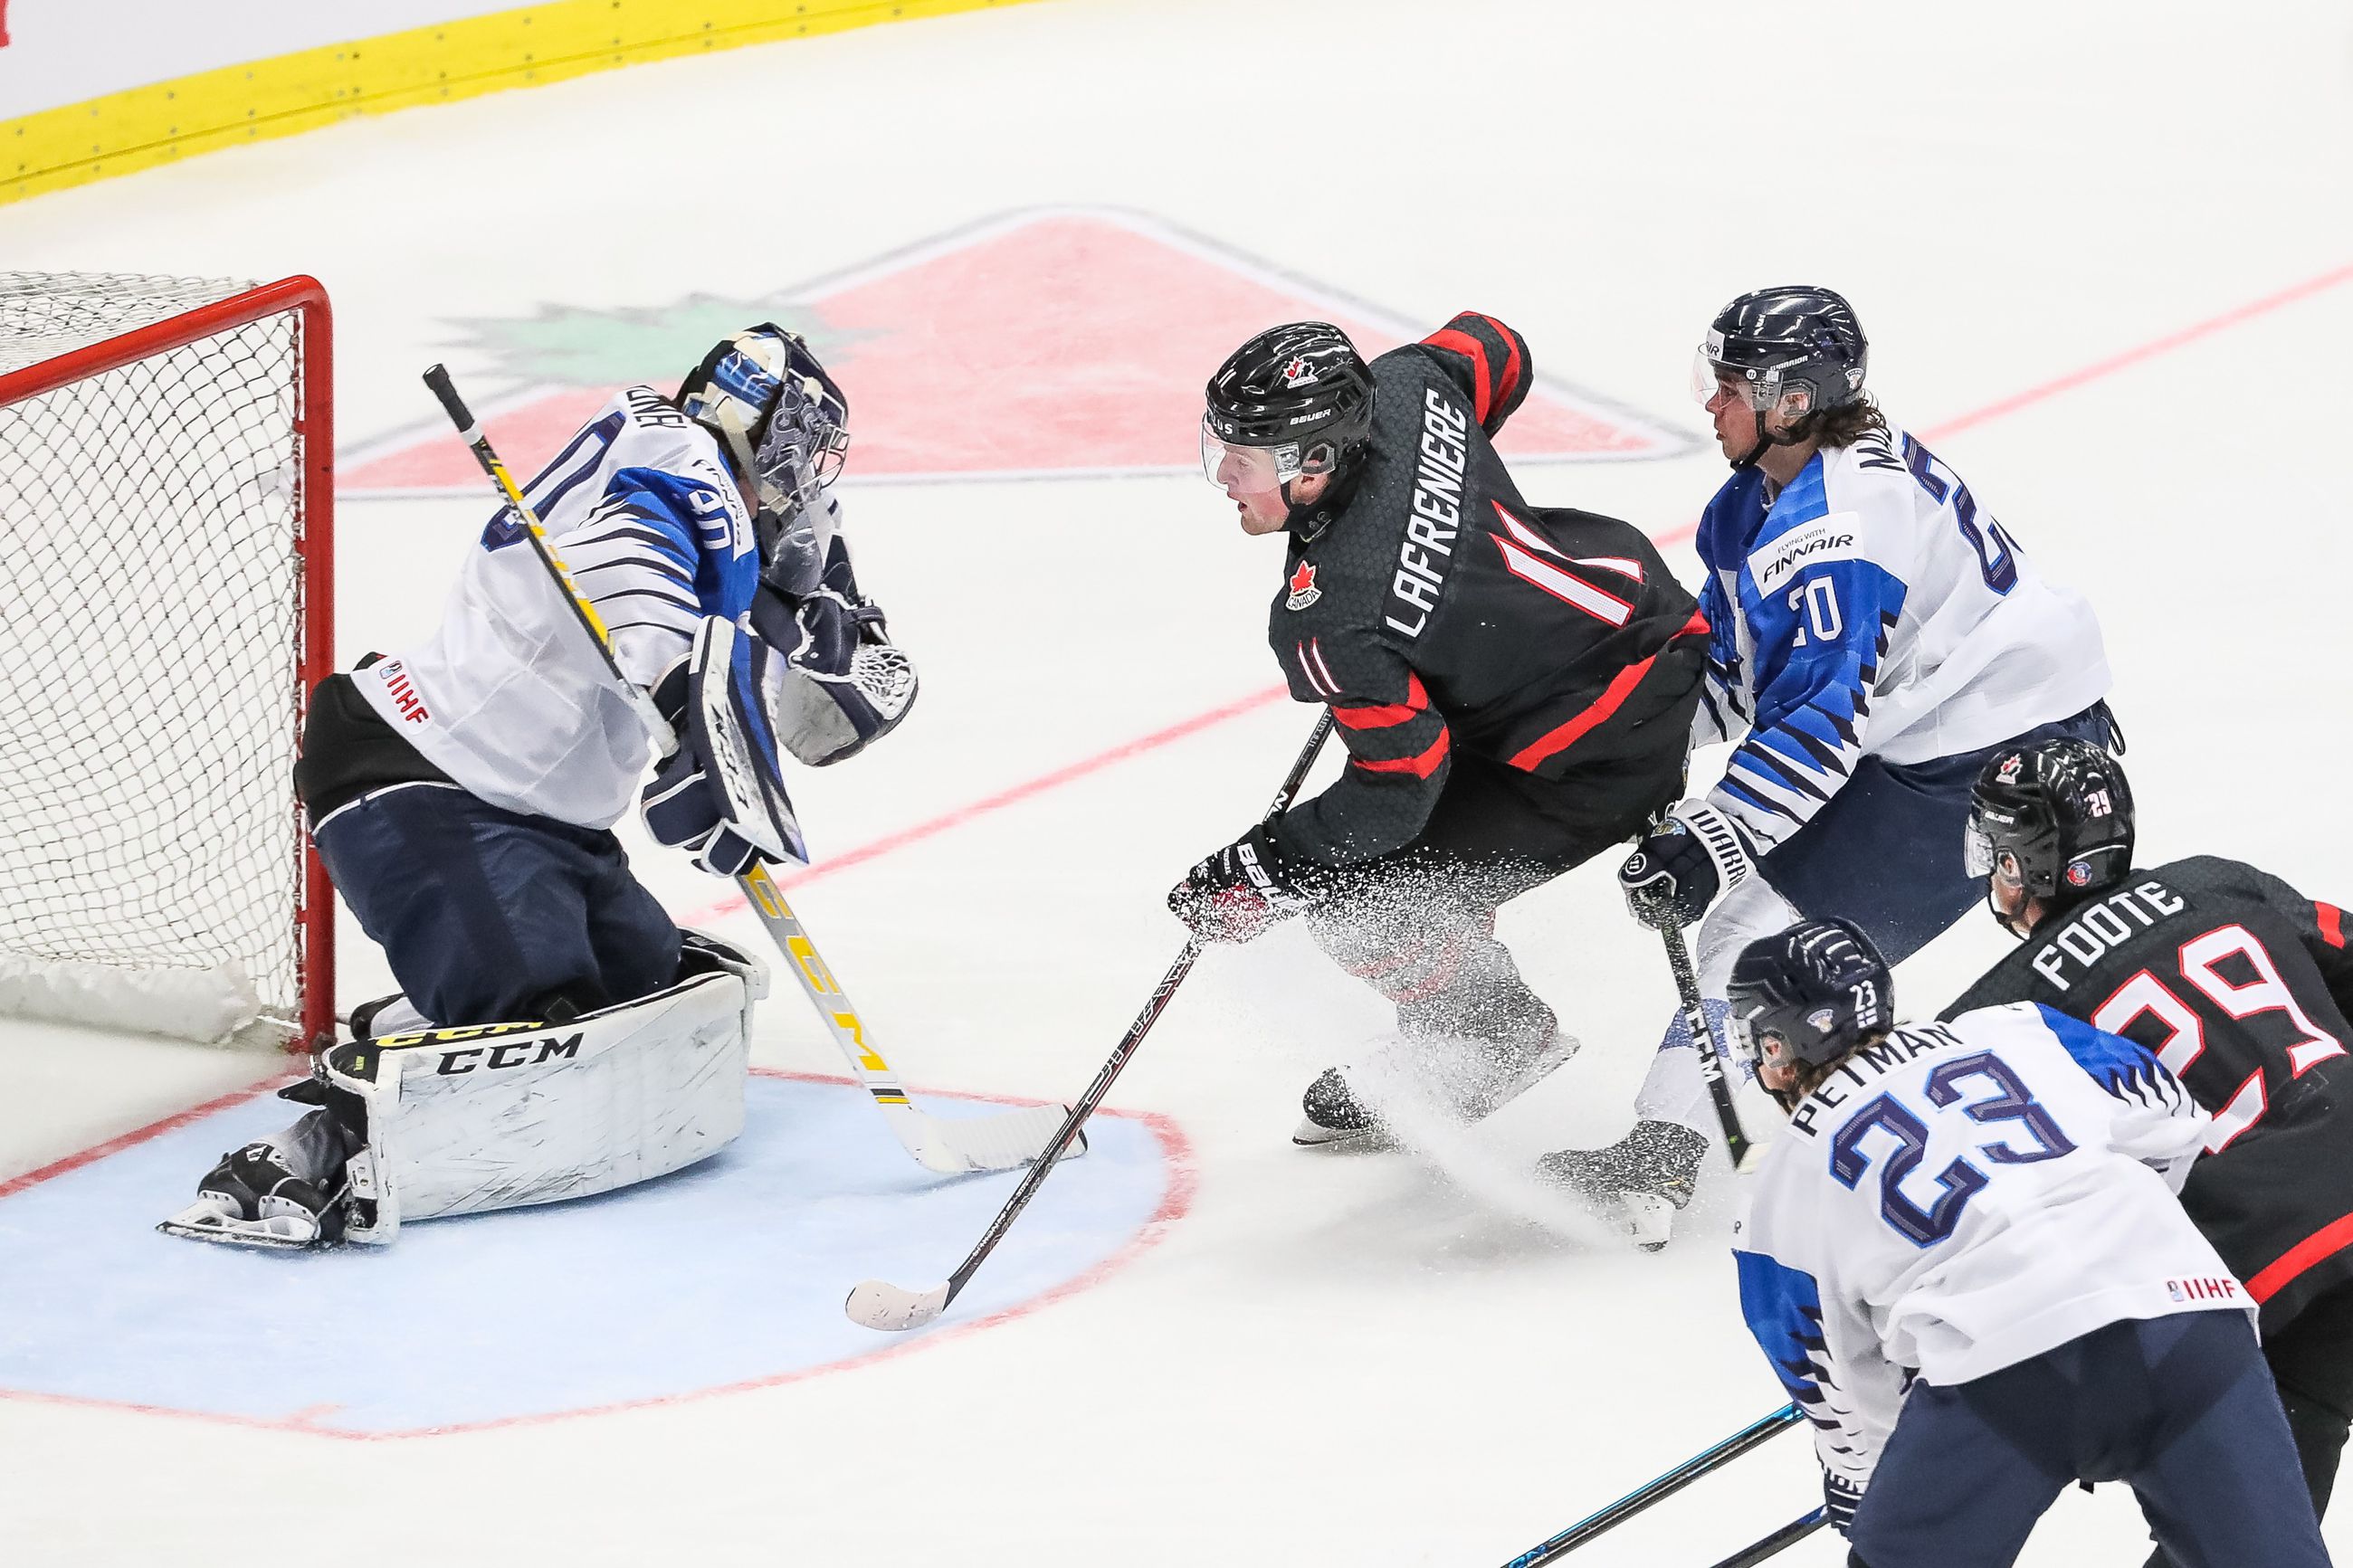 Leijonat jäi kanadalaisen jyrän alle MM-välierässä – Viisi kertaa  antautunut Annunen valittiin turnauksessa Suomen parhaaksi pelaajaksi |  Kaleva